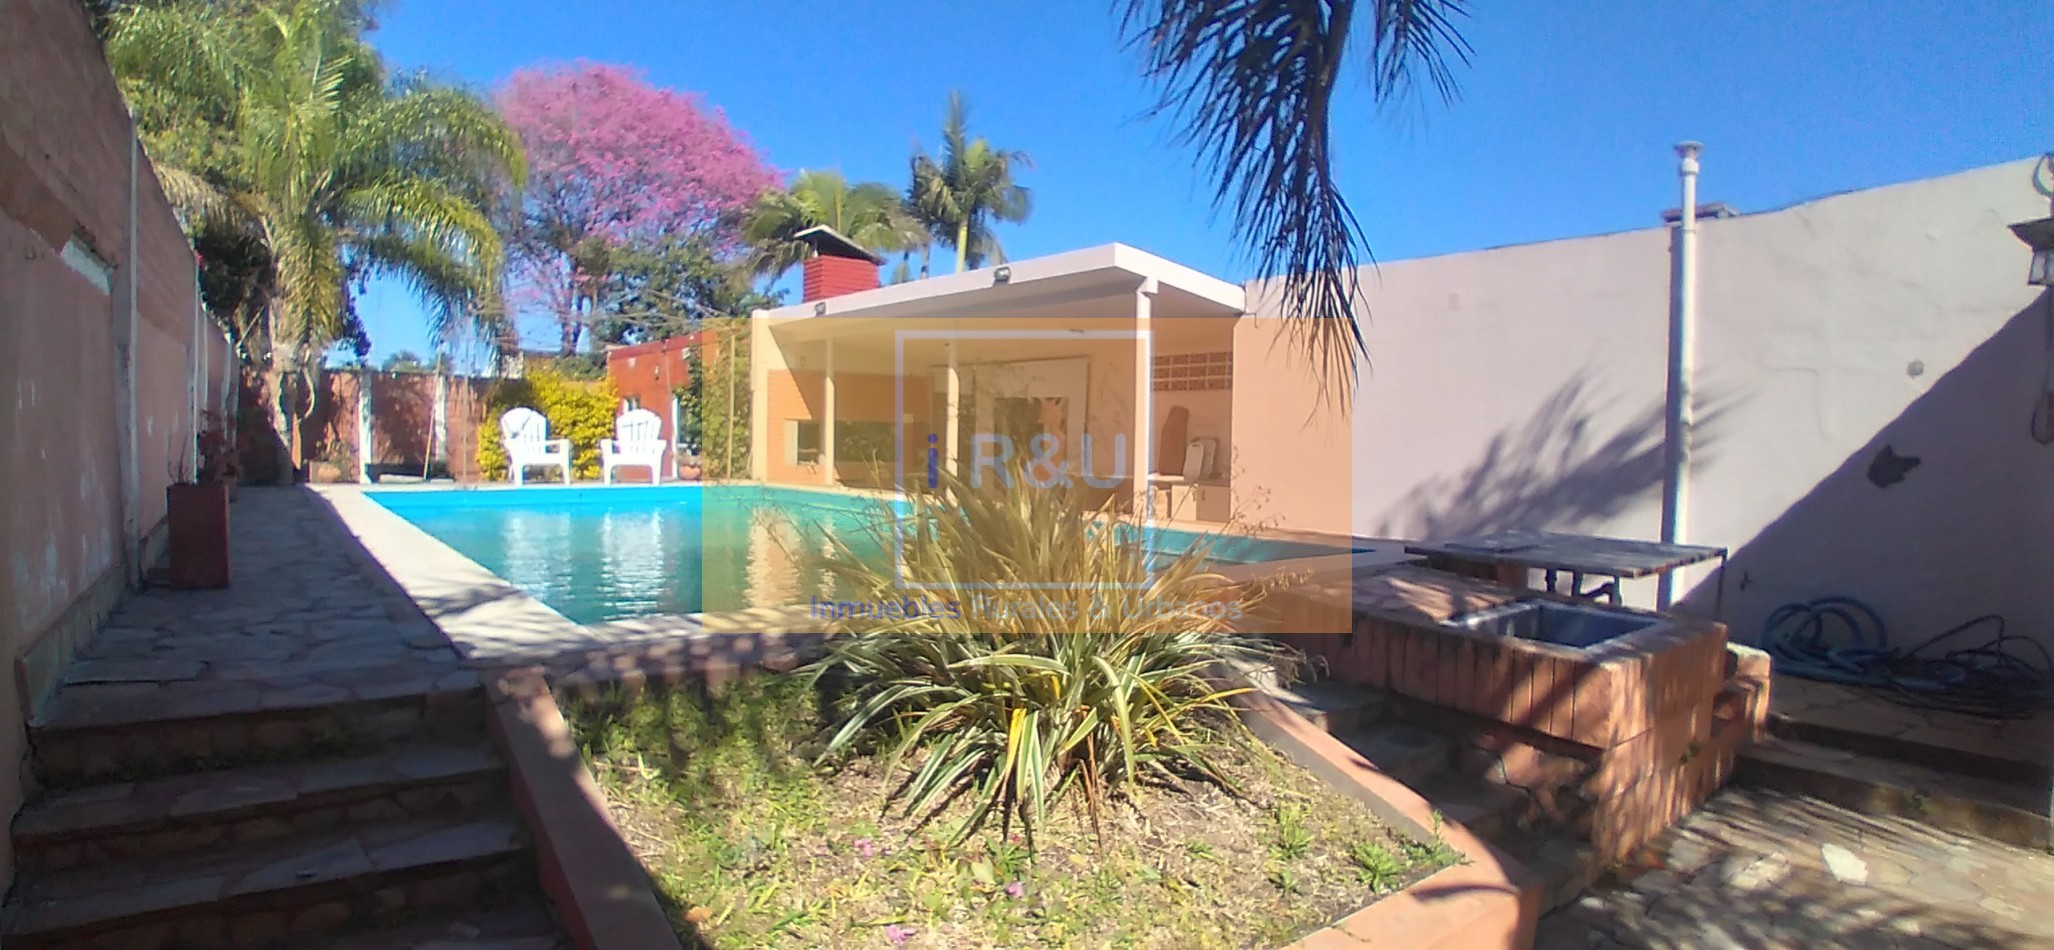 Casa de ensueño con jardin y piscina en Barrio Oeste de Reconquista